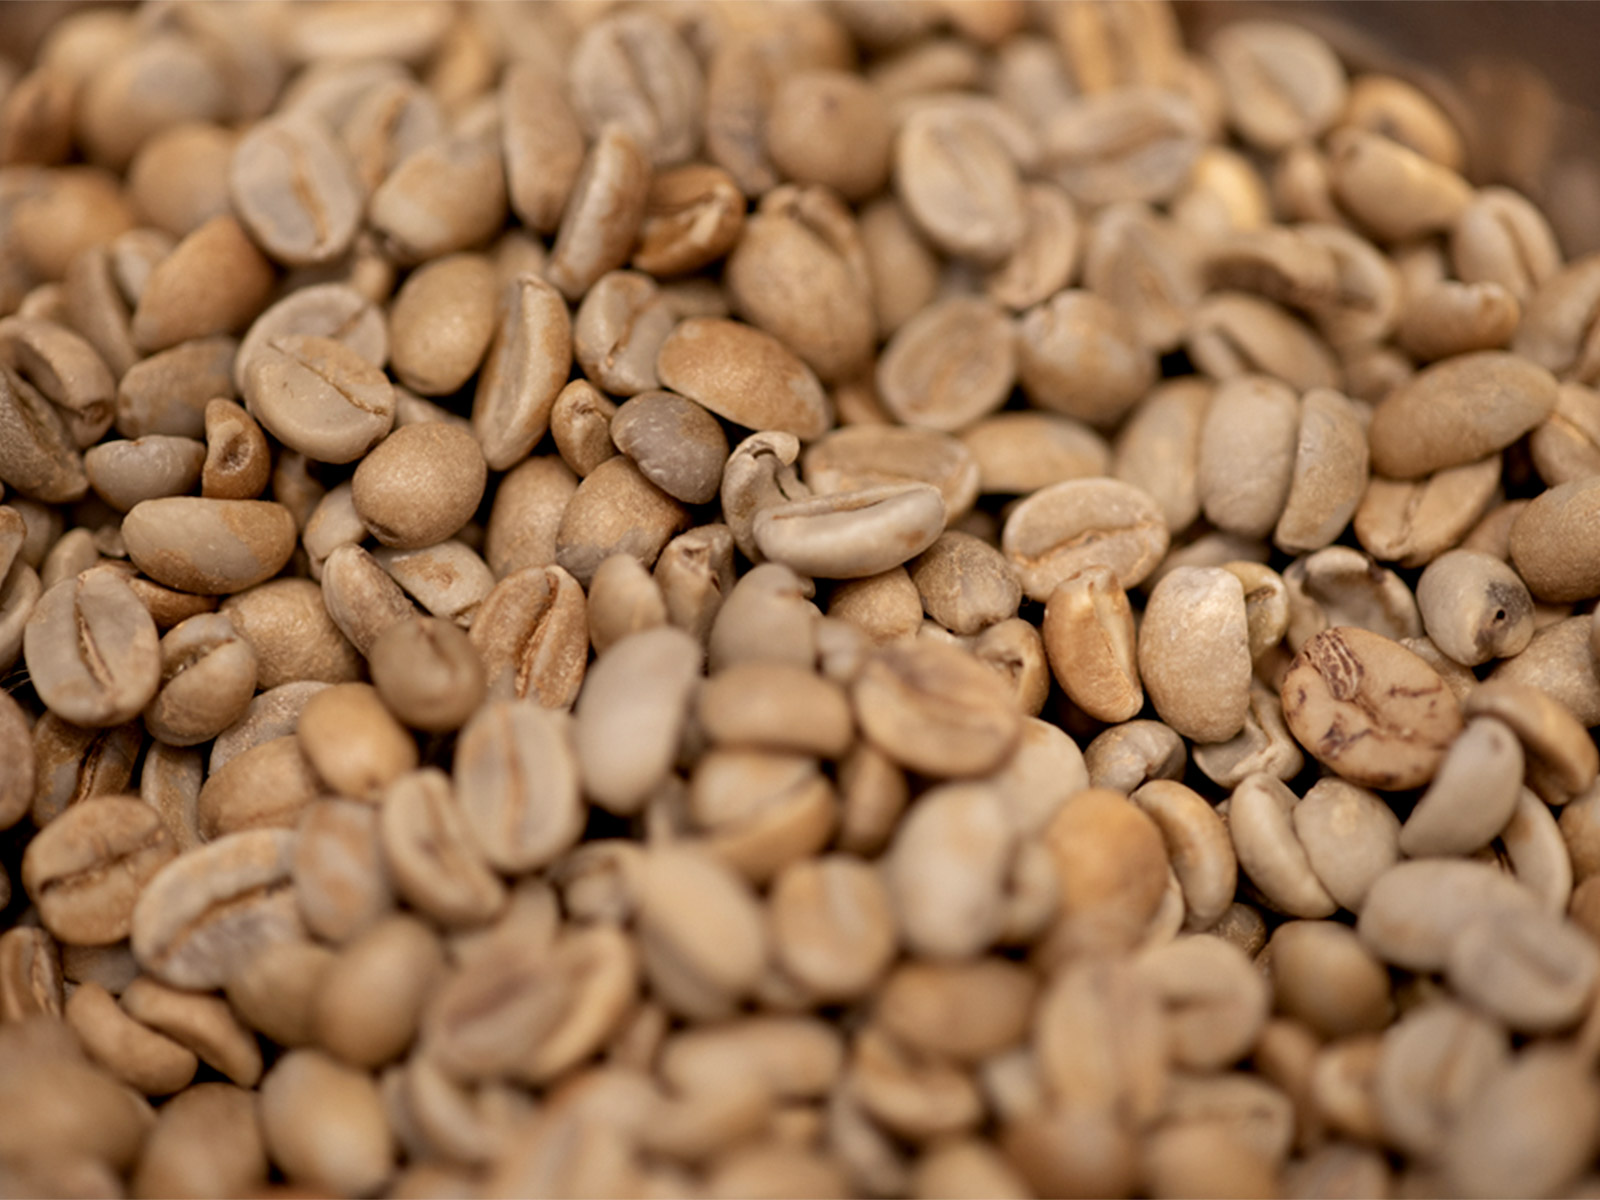 平らなコーヒー豆と、まん丸のコーヒー豆。 | yaunn | 毎日使うモノのことを知る、選ぶ力を磨く。